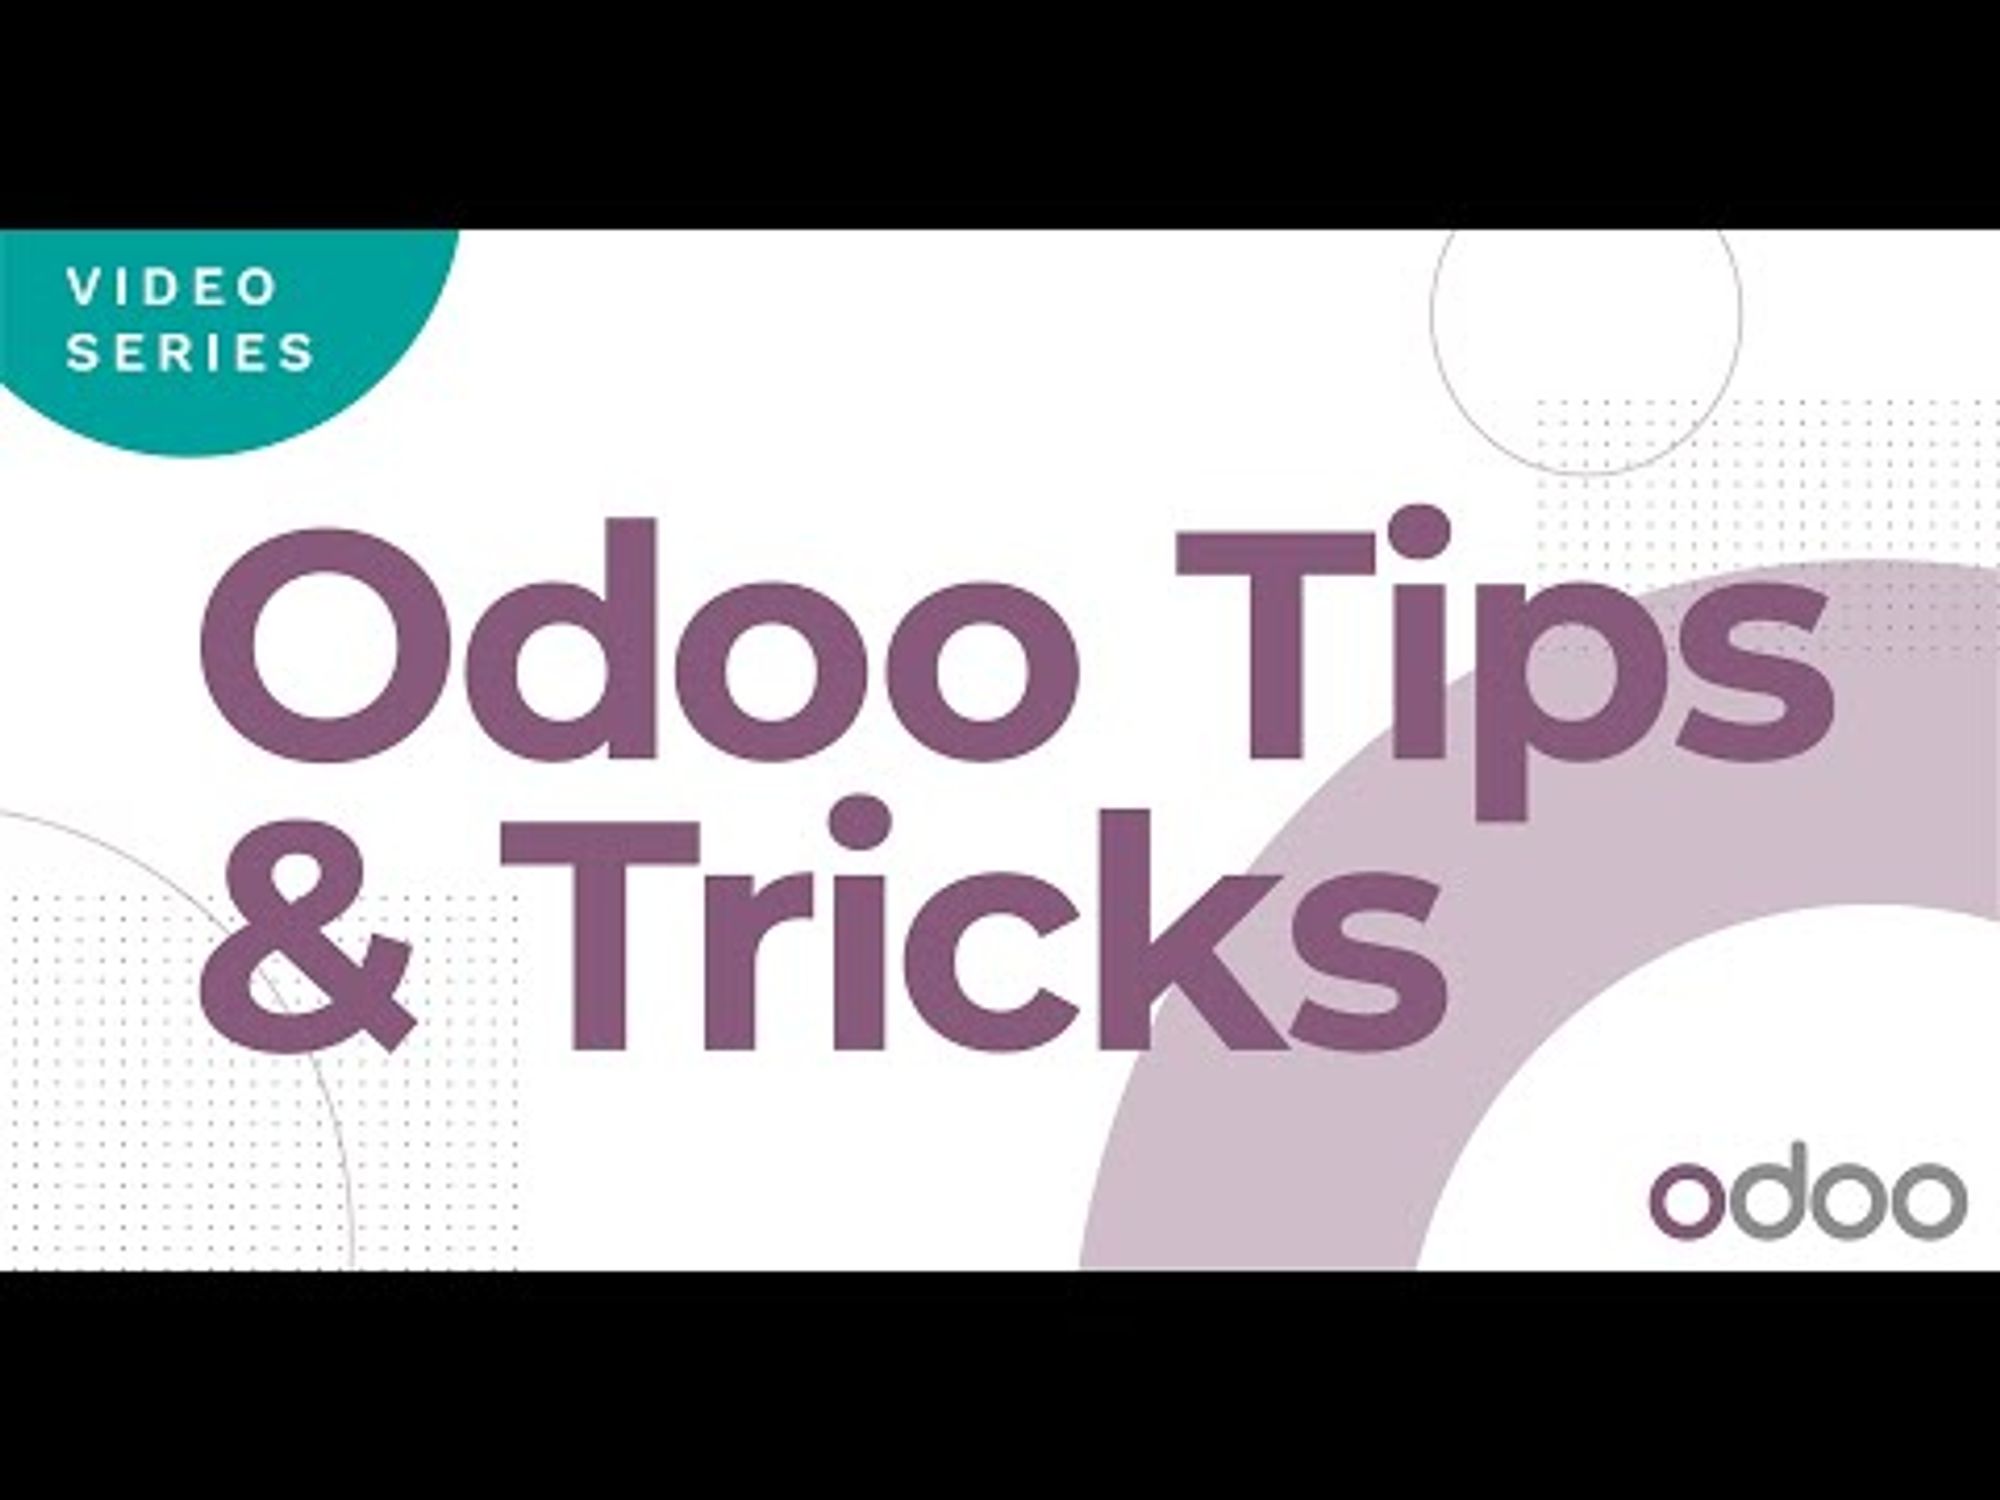 Odoo Tips and Tricks: Do I Need an Odoo Partner